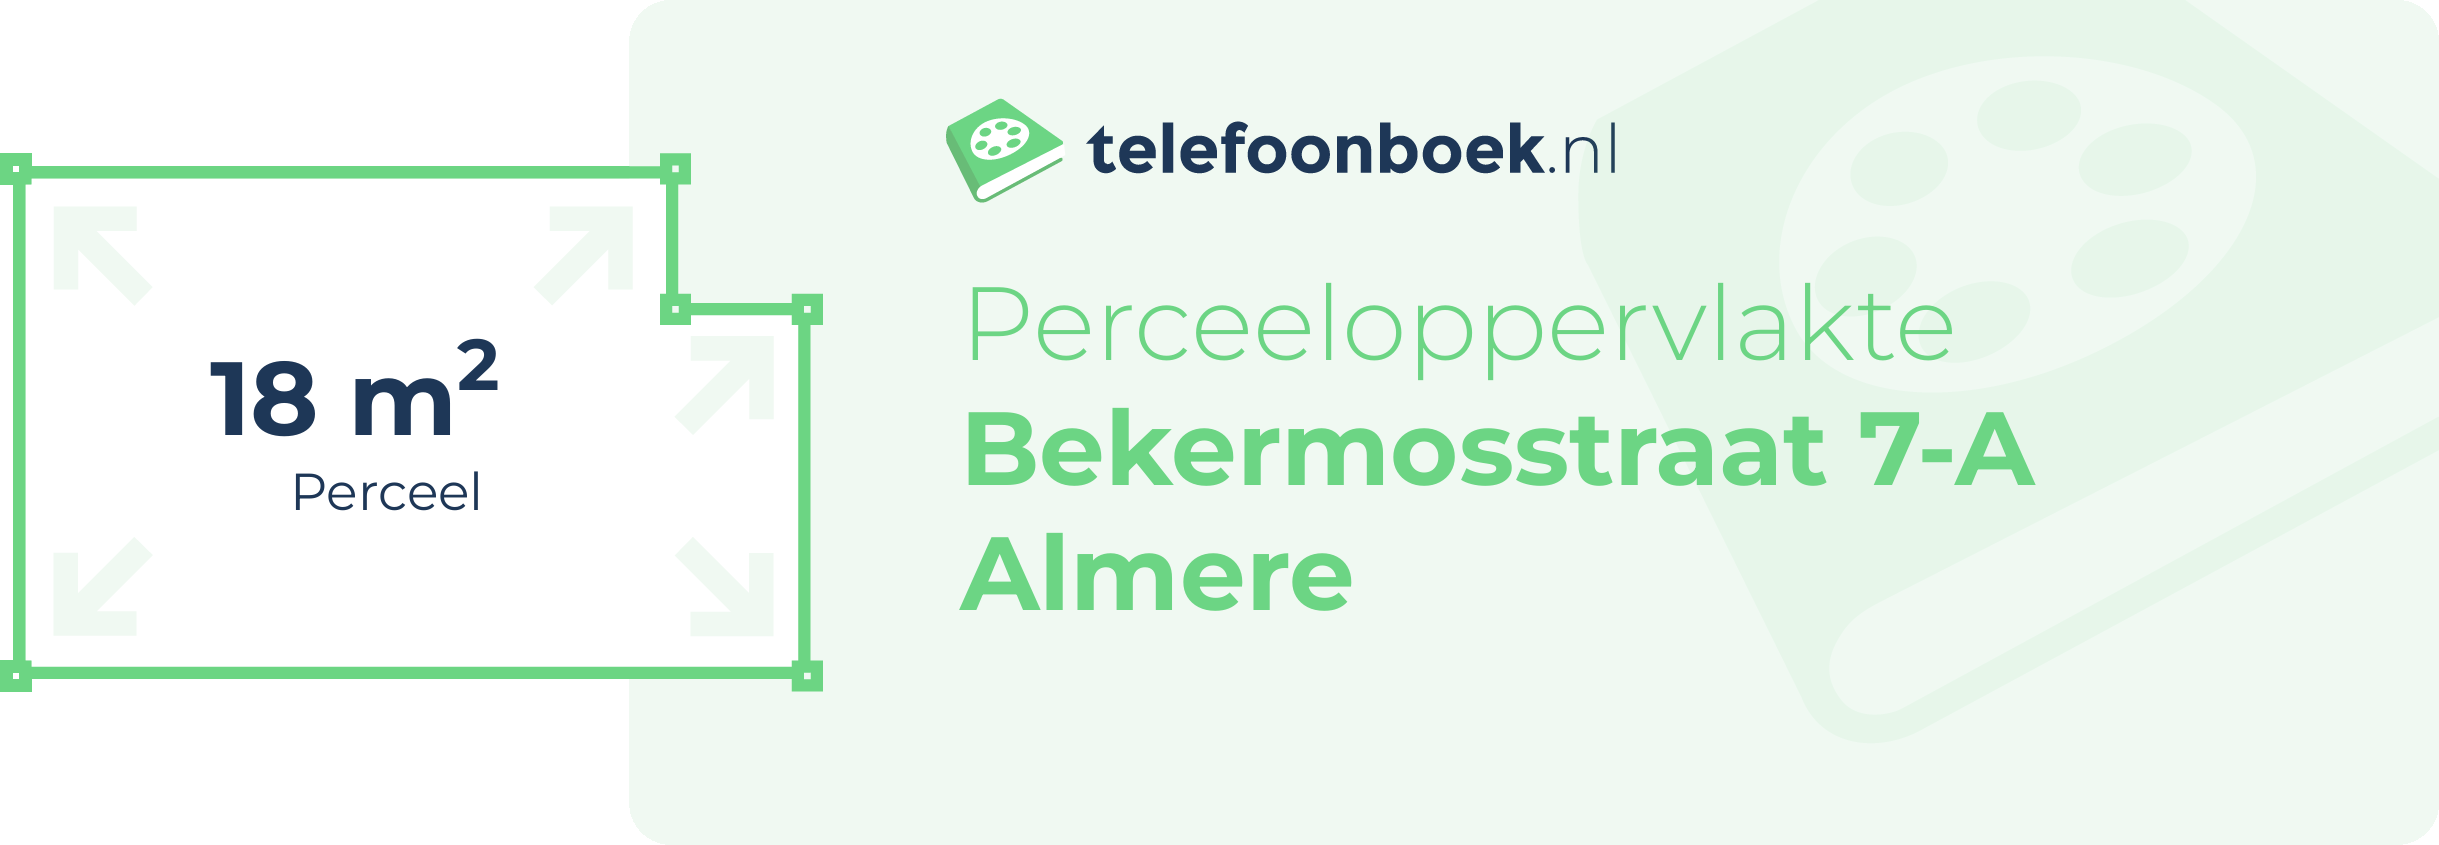 Perceeloppervlakte Bekermosstraat 7-A Almere